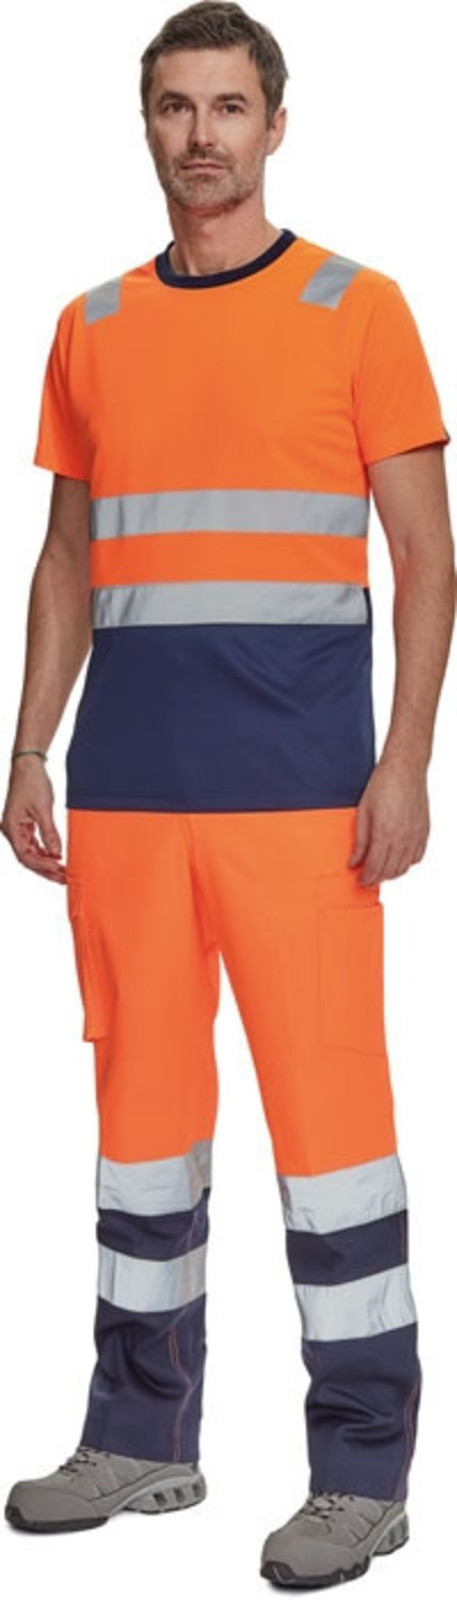 Reflexné tričko Cerva Monzon HV - veľkosť: S, farba: oranžová/navy